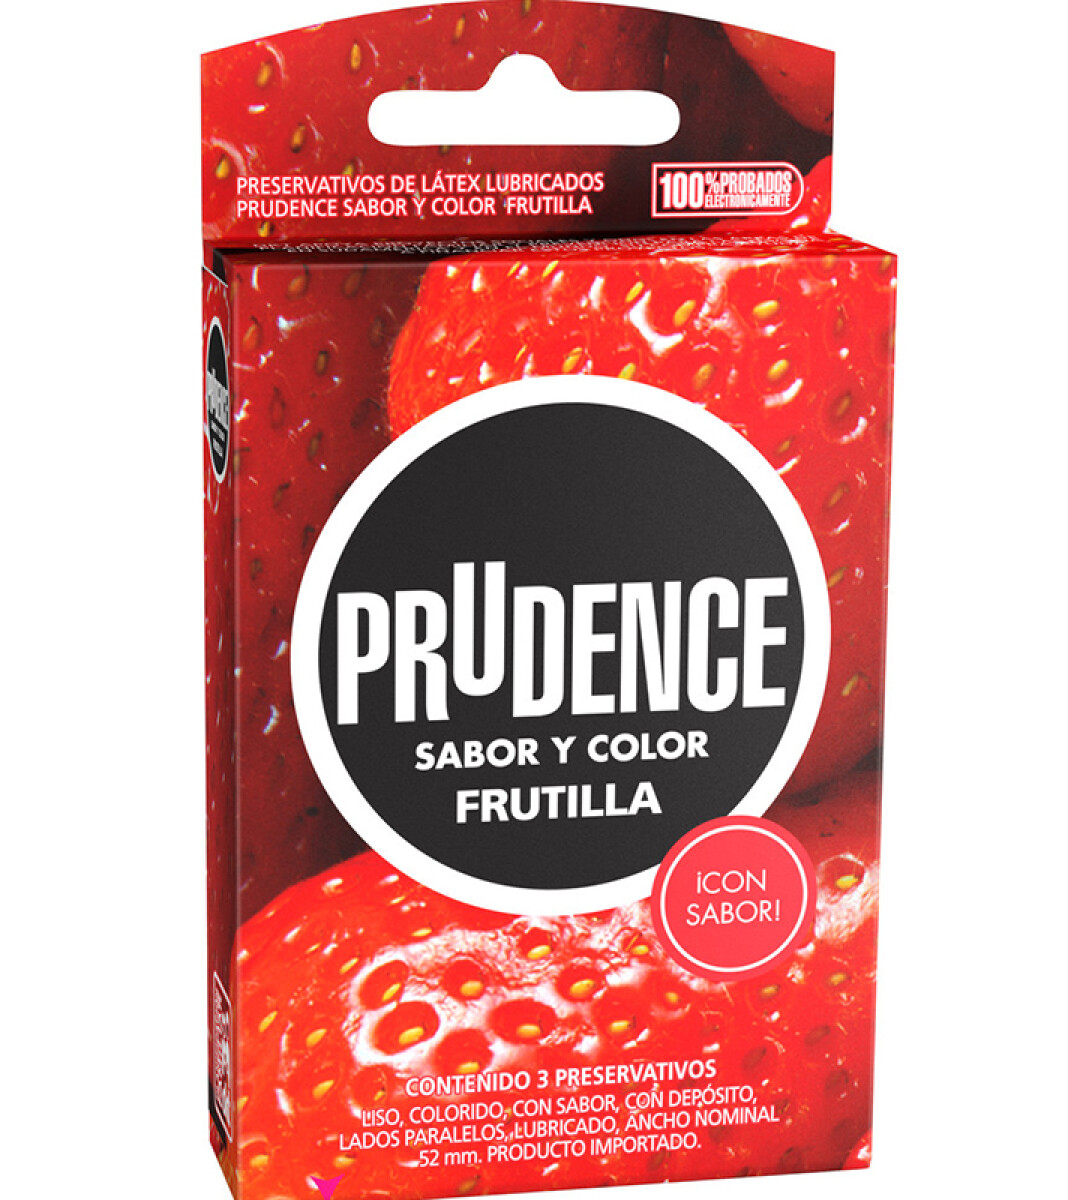 Preservativos Prudence - Sabor frutilla 